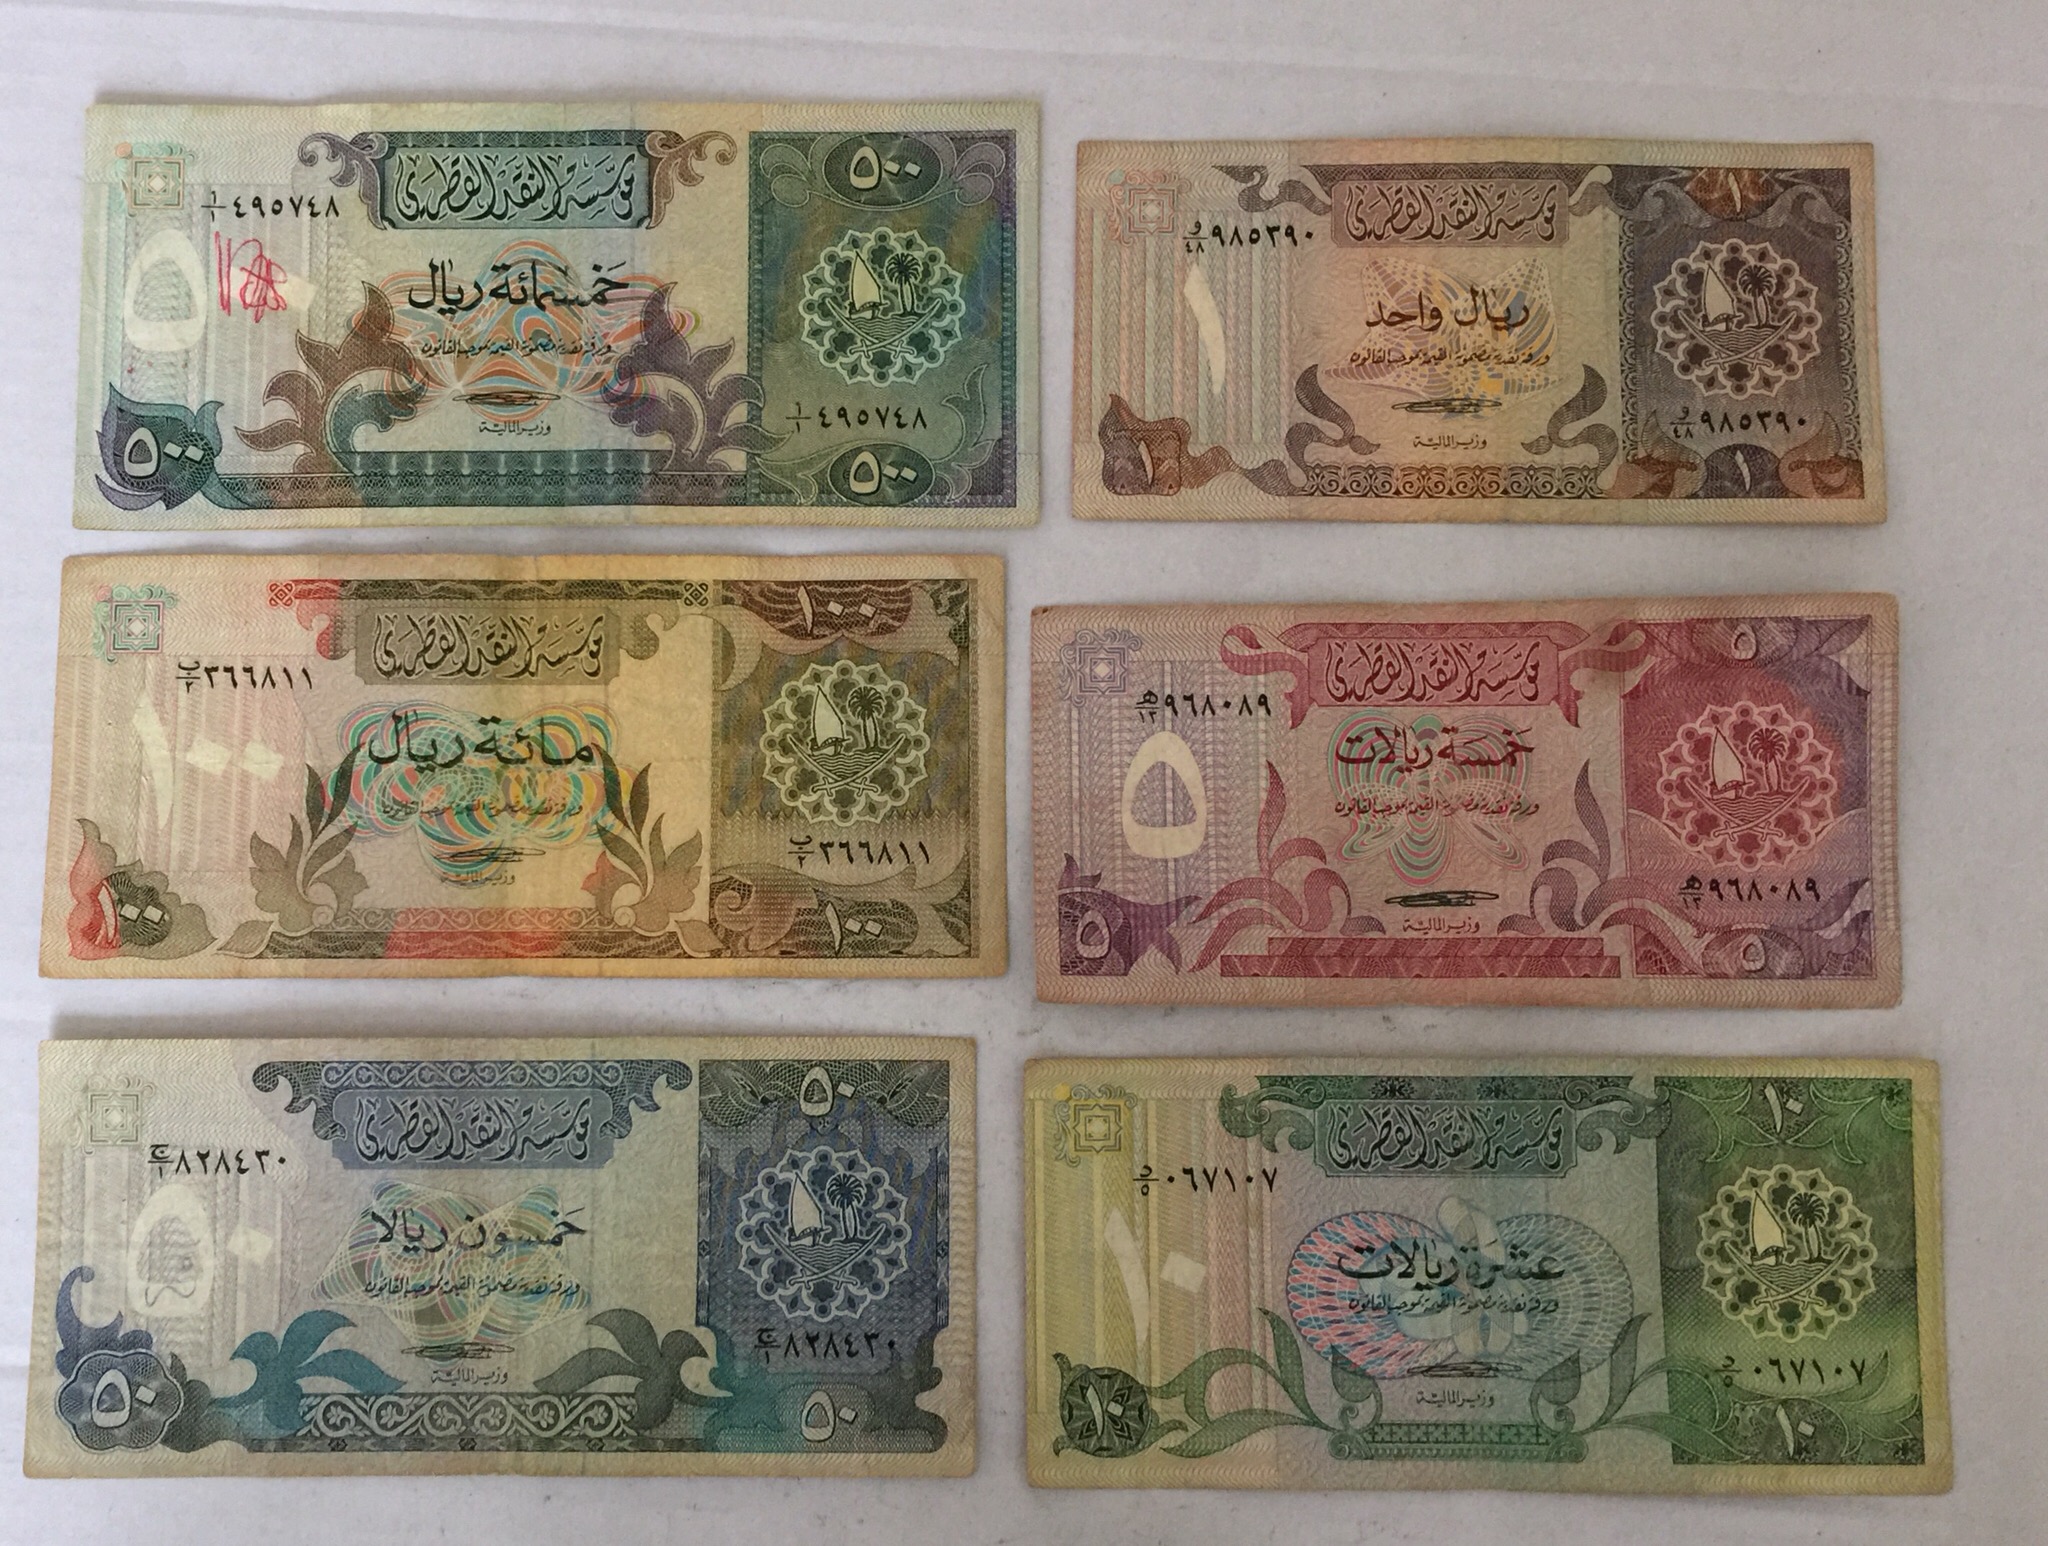 1980 Qatar Monetary Complete Set 1 5 10 50 100 500 Riyals Banknotes 2nd Issue قطر مجموعة الاصدار الثاني من الريال للخمسماية ريال